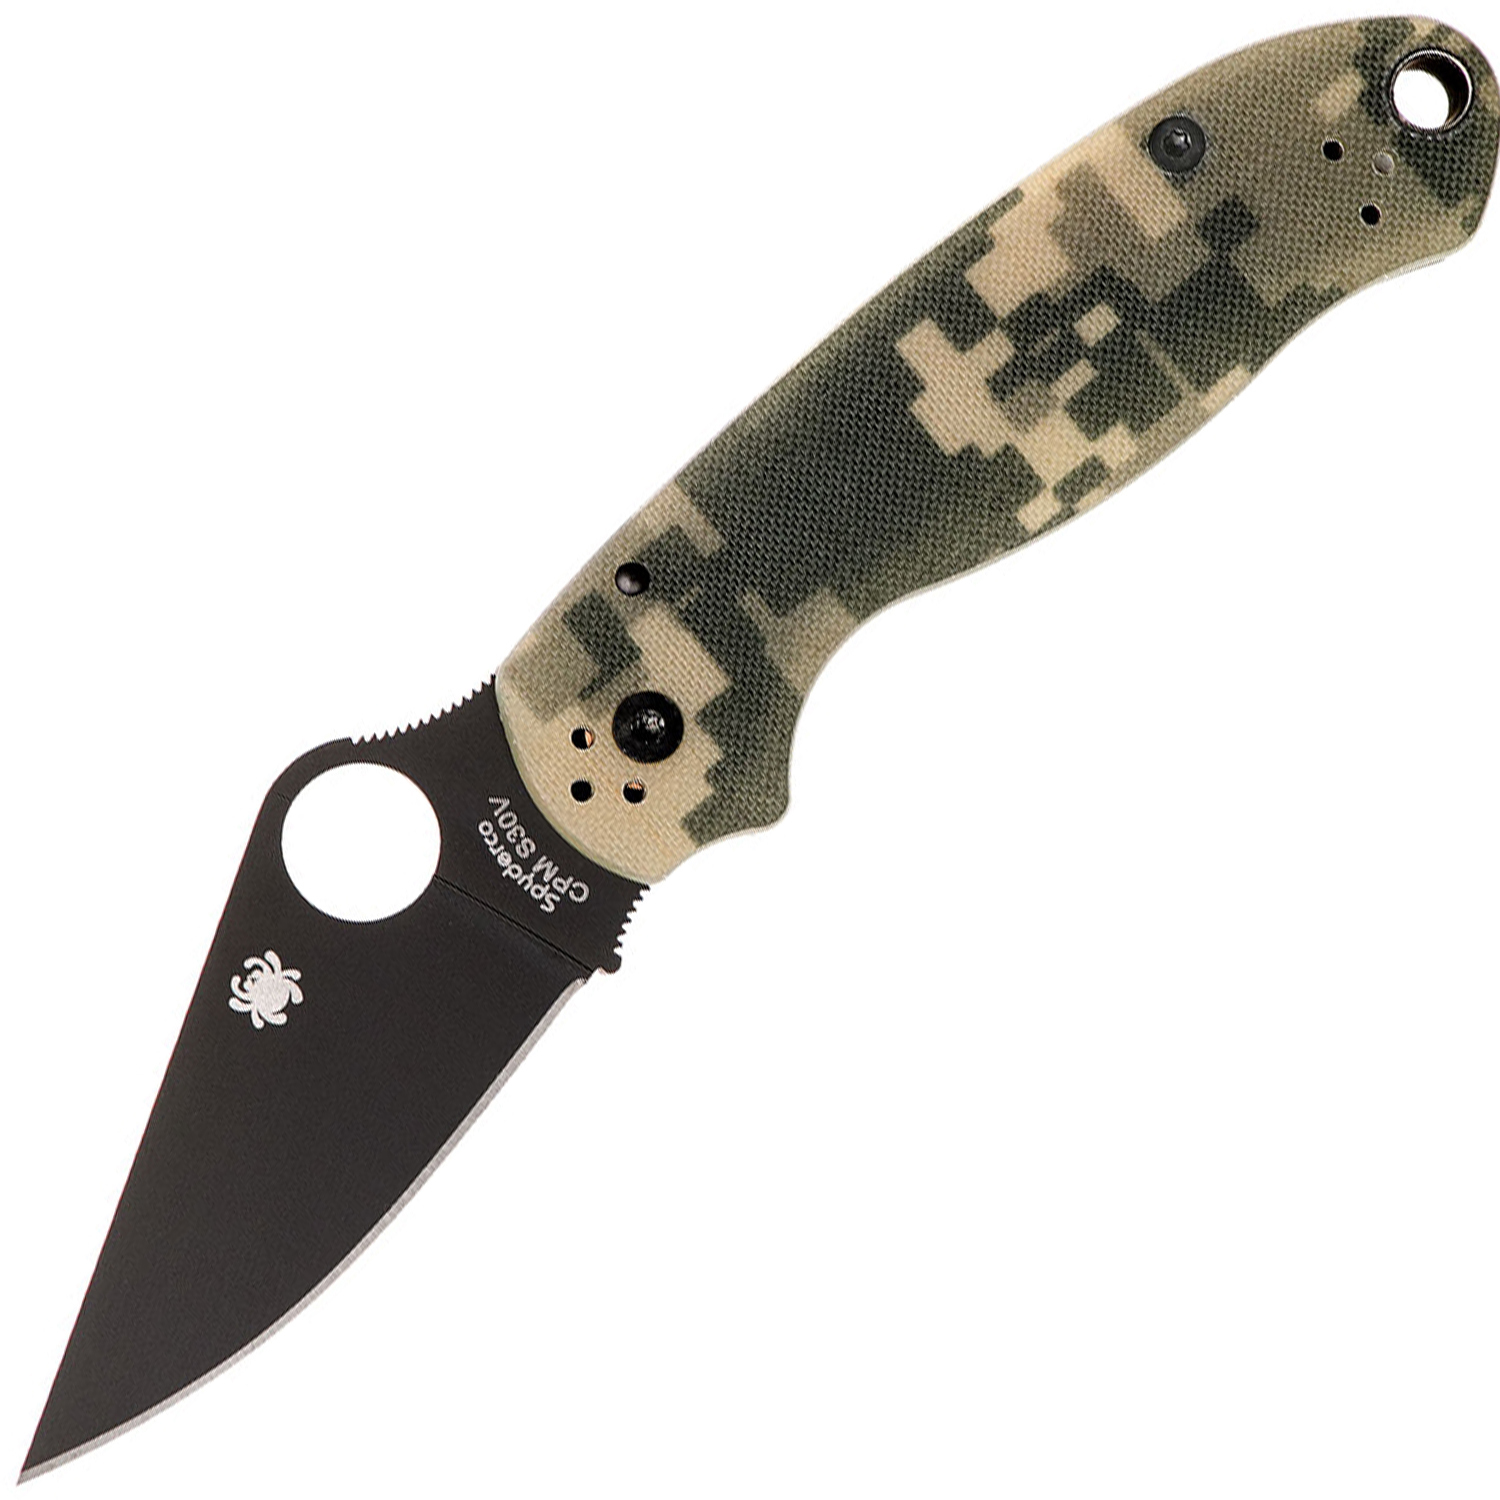 Нож складной Para 3 - Spyderco 223GPCMOBK, сталь Crucible CPM® S30V™ Black DLC Coated Plain, рукоять стеклотекстолит G10, цифровой камуфляж (Digi Camo)